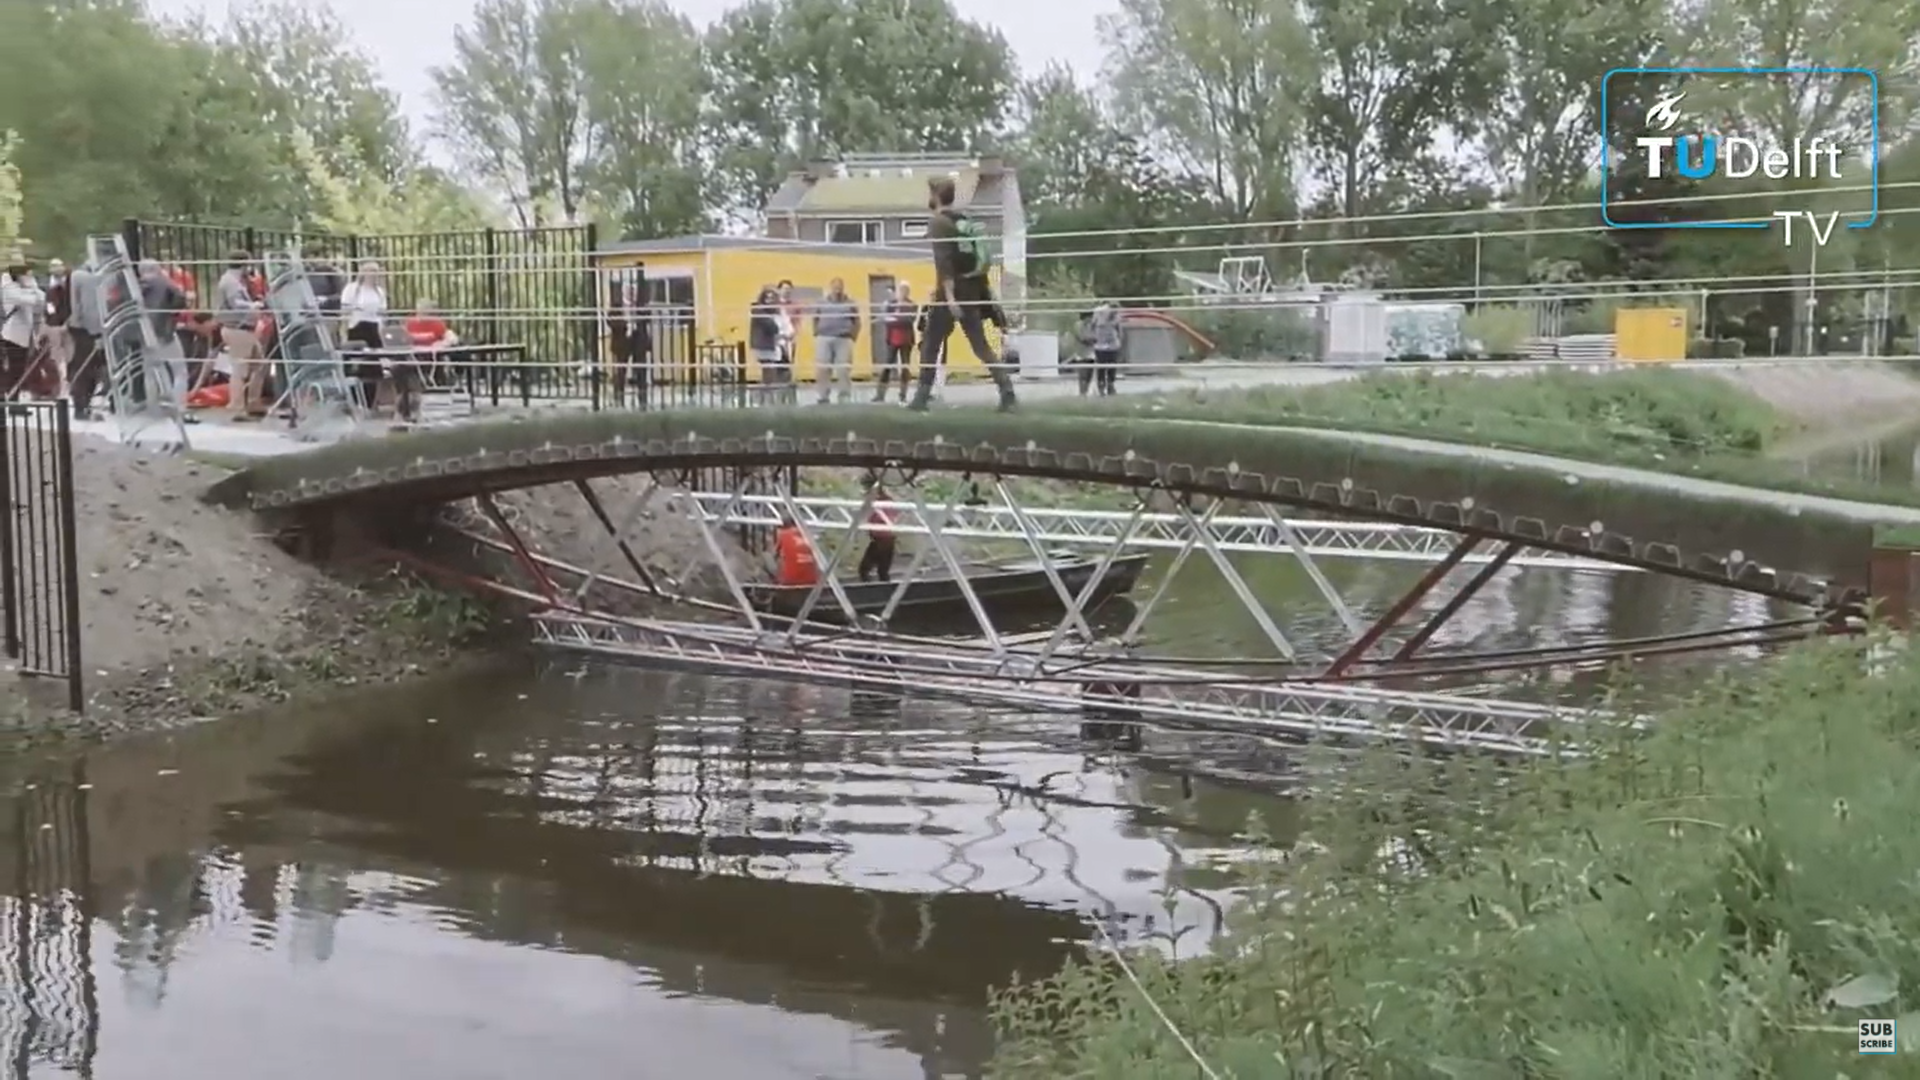 Ponte de vidro na Universidade de Tecnologia Delft, na Holanda	